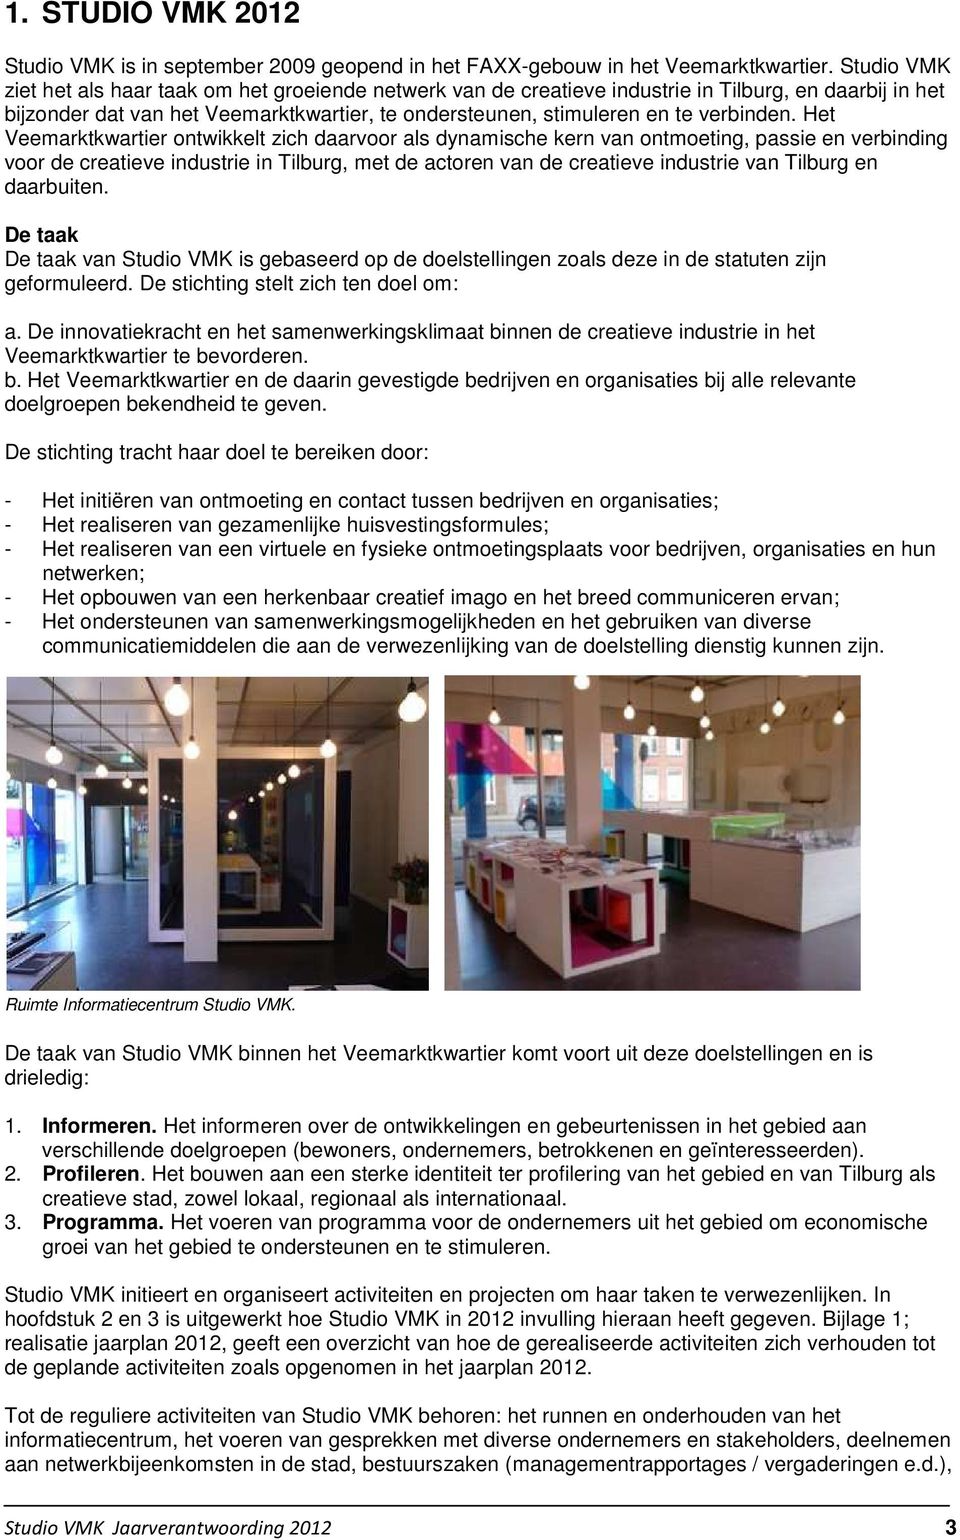 Het Veemarktkwartier ontwikkelt zich daarvoor als dynamische kern van ontmoeting, passie en verbinding voor de creatieve industrie in Tilburg, met de actoren van de creatieve industrie van Tilburg en